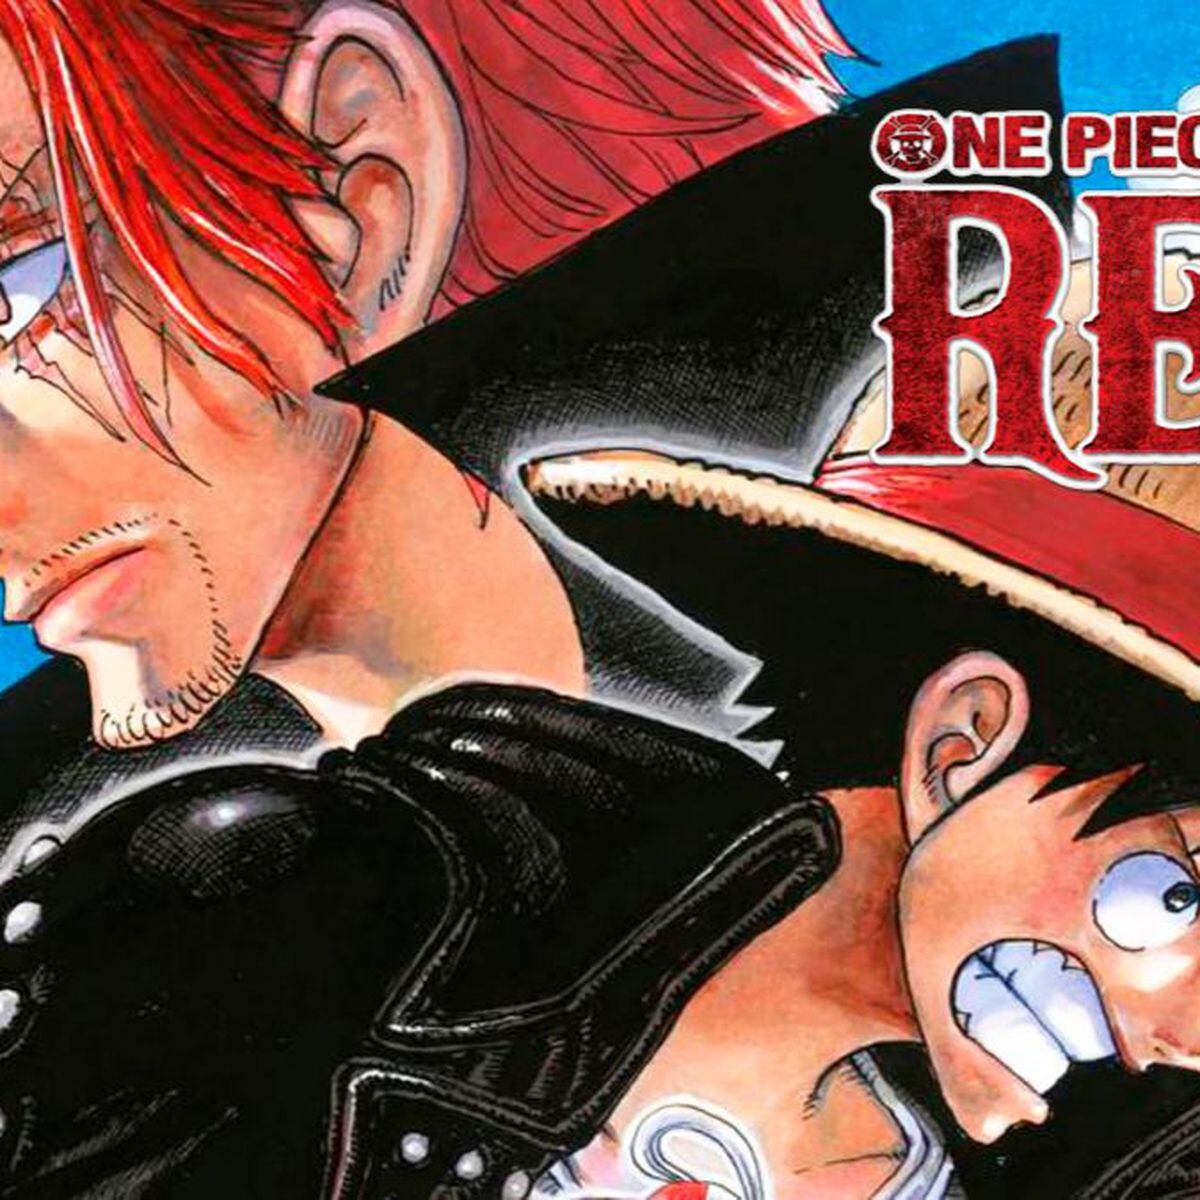 One Piece Film RED, crítica. Una película desafinada - Meristation